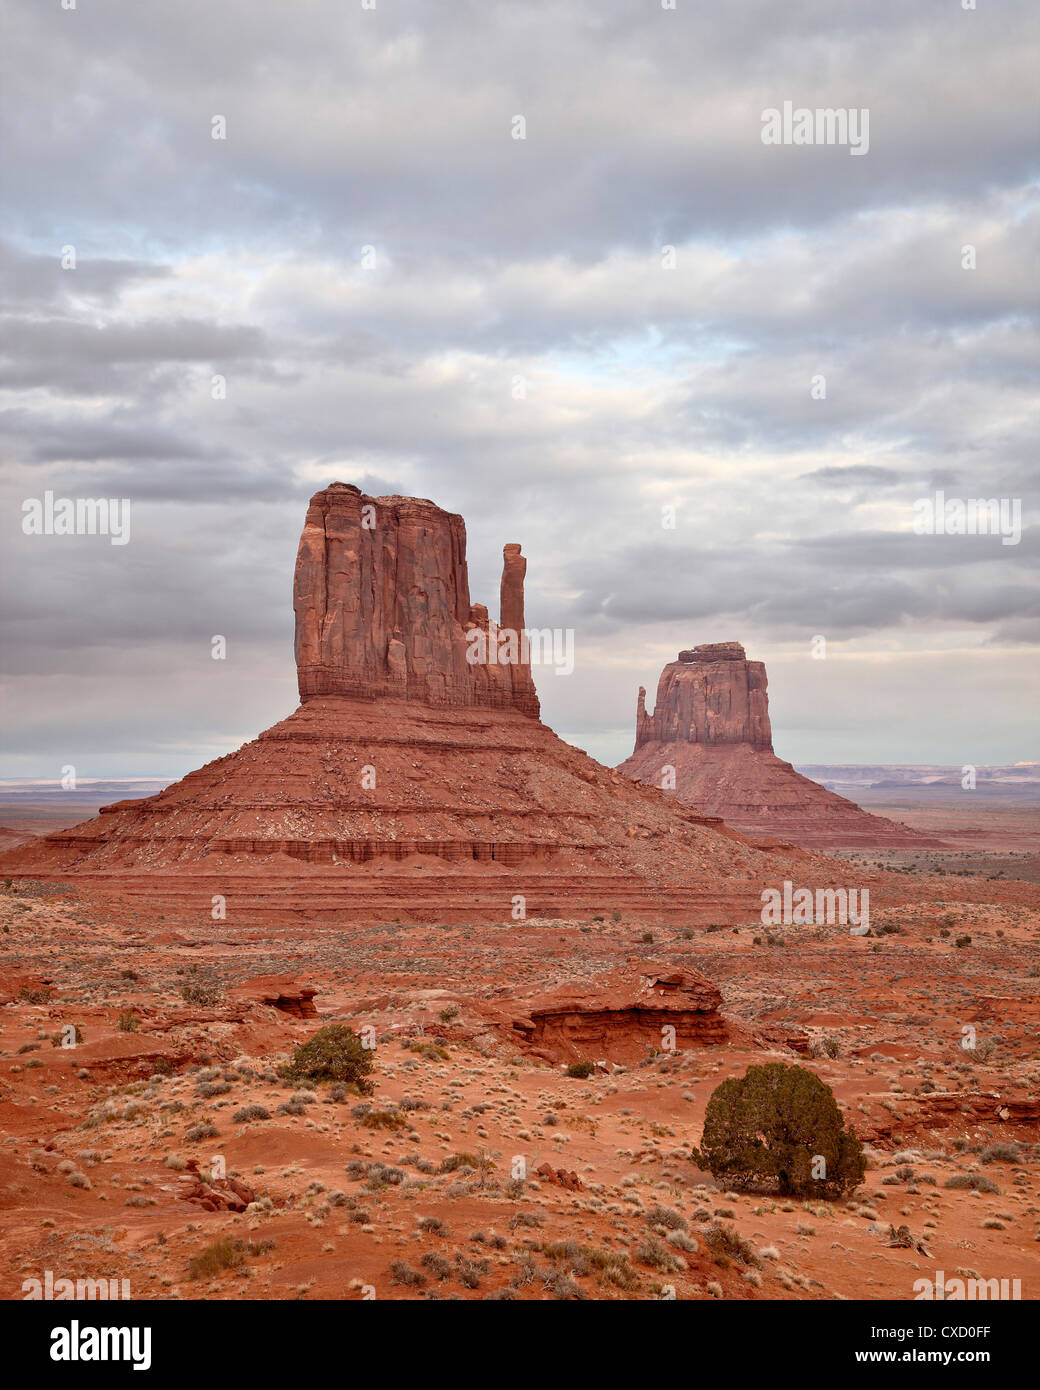 Die Fäustlinge, Monument Valley Navajo Tribal Park, Arizona, Vereinigte Staaten von Amerika, Nordamerika Stockfoto